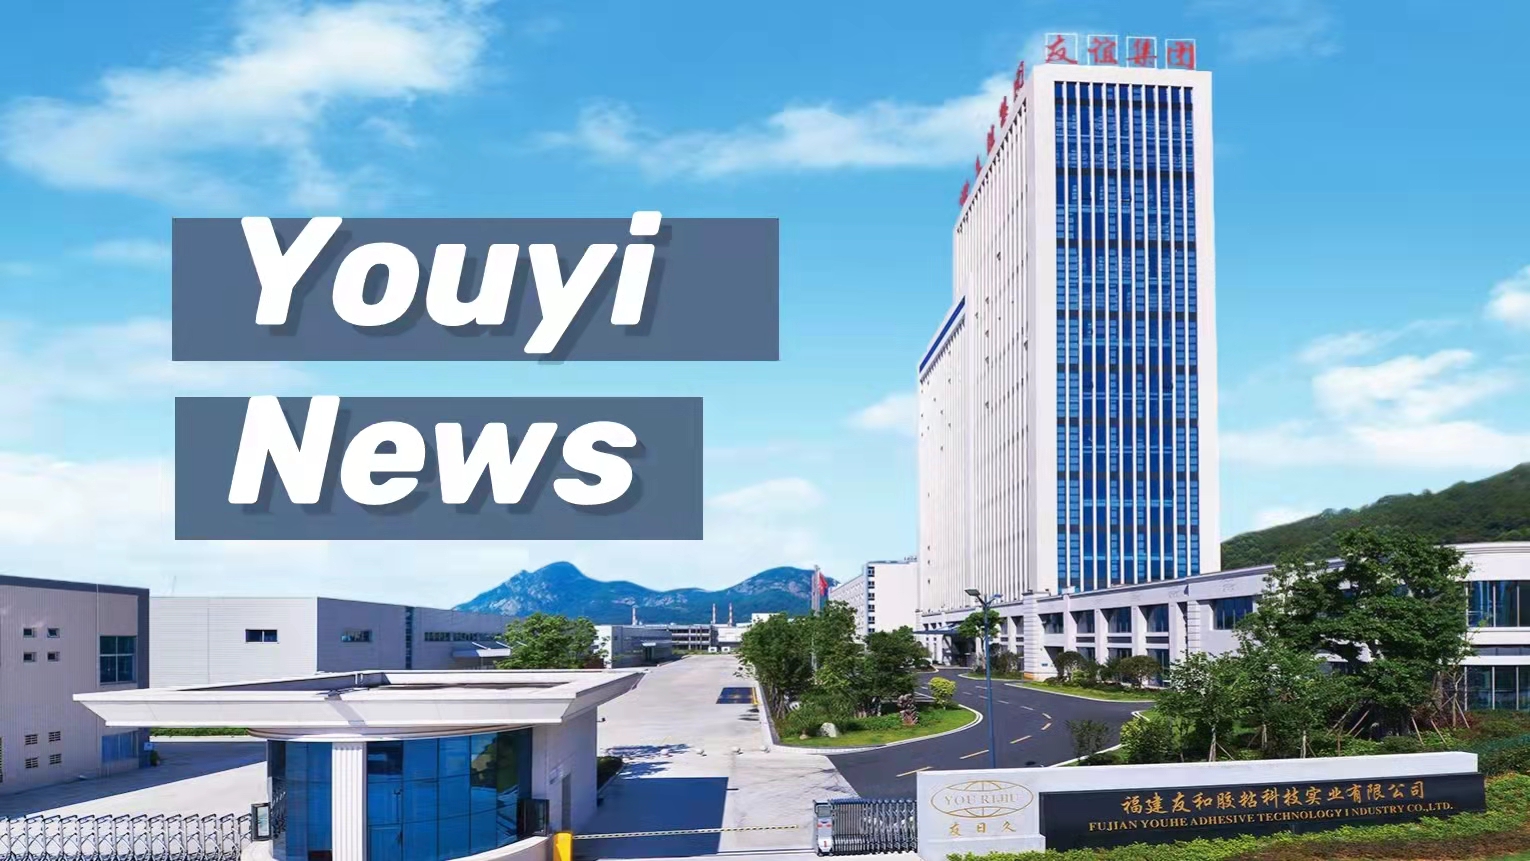 die feierliche Eröffnung des Osttors des Youyi-Industrieparks für neue Materialien
